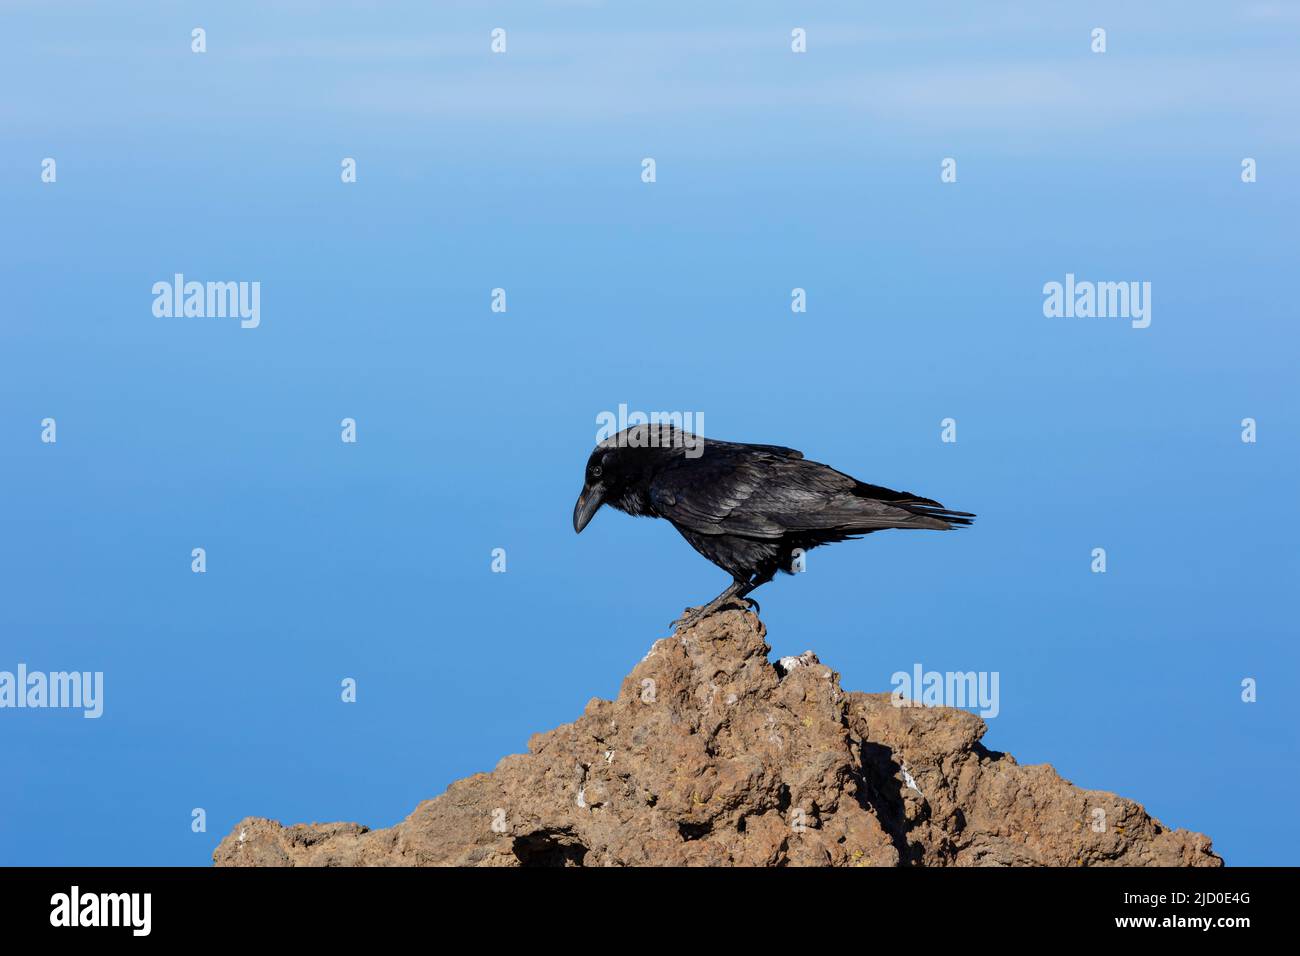 Ritratto di nero corvo comune su una roccia, con lo sfondo di un cielo blu, fotografato sull'isola di la Palma, Isole Canarie. Foto Stock